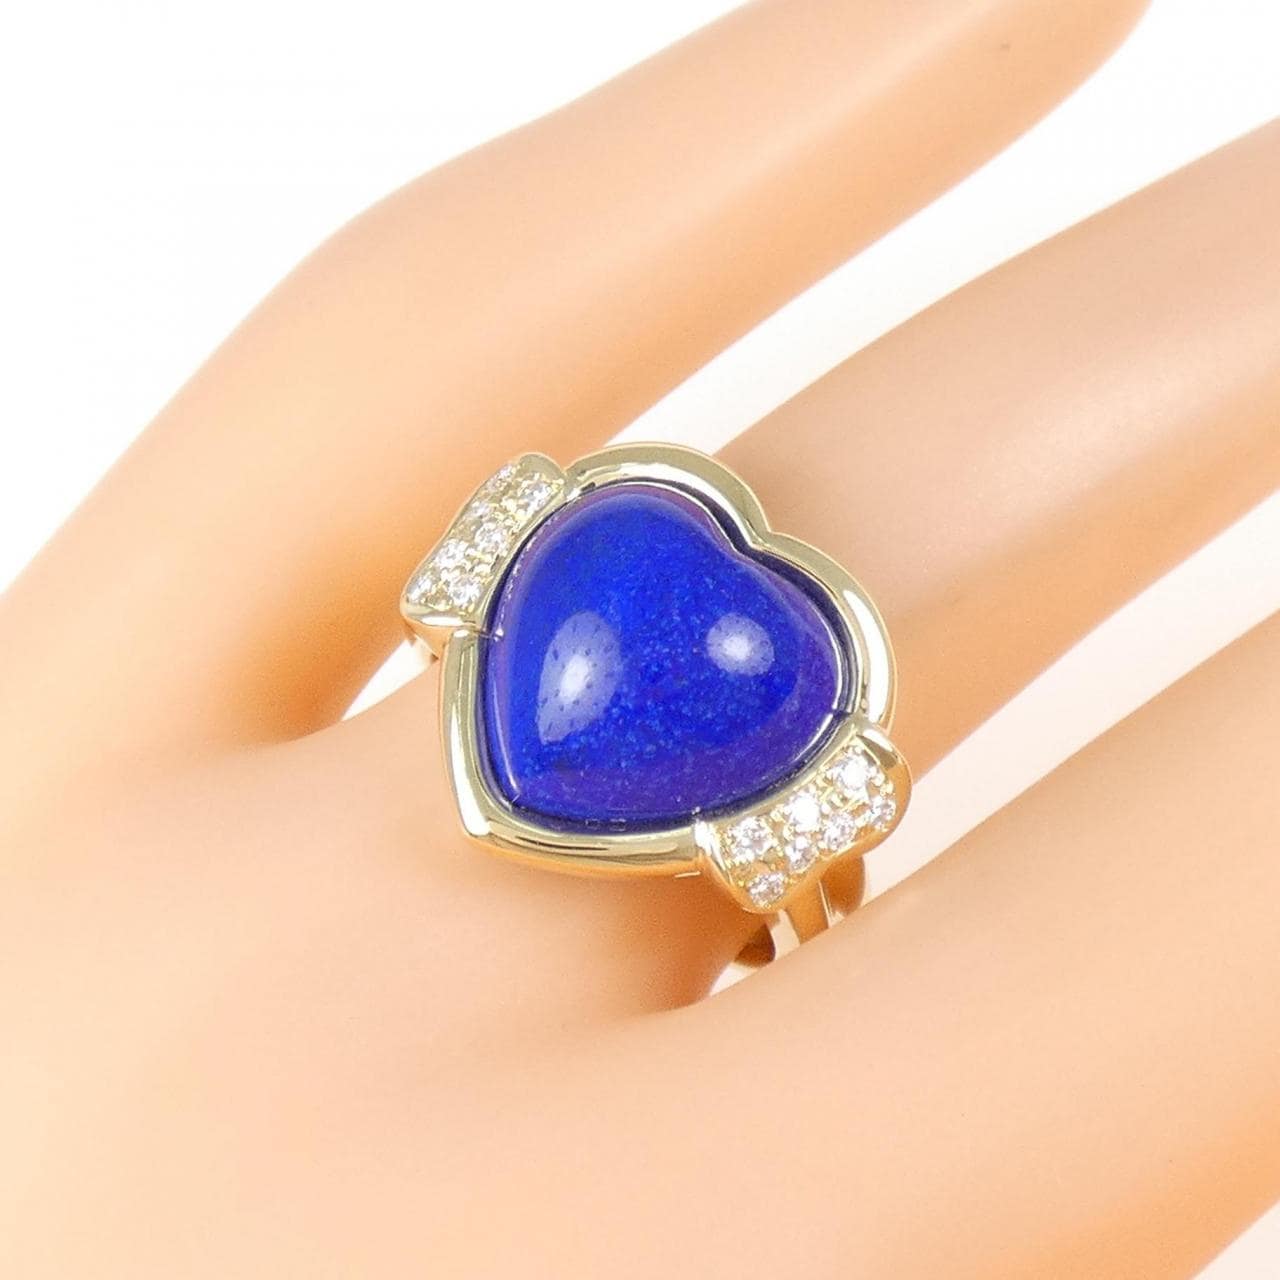 K18YG heart lapis lazuli ring